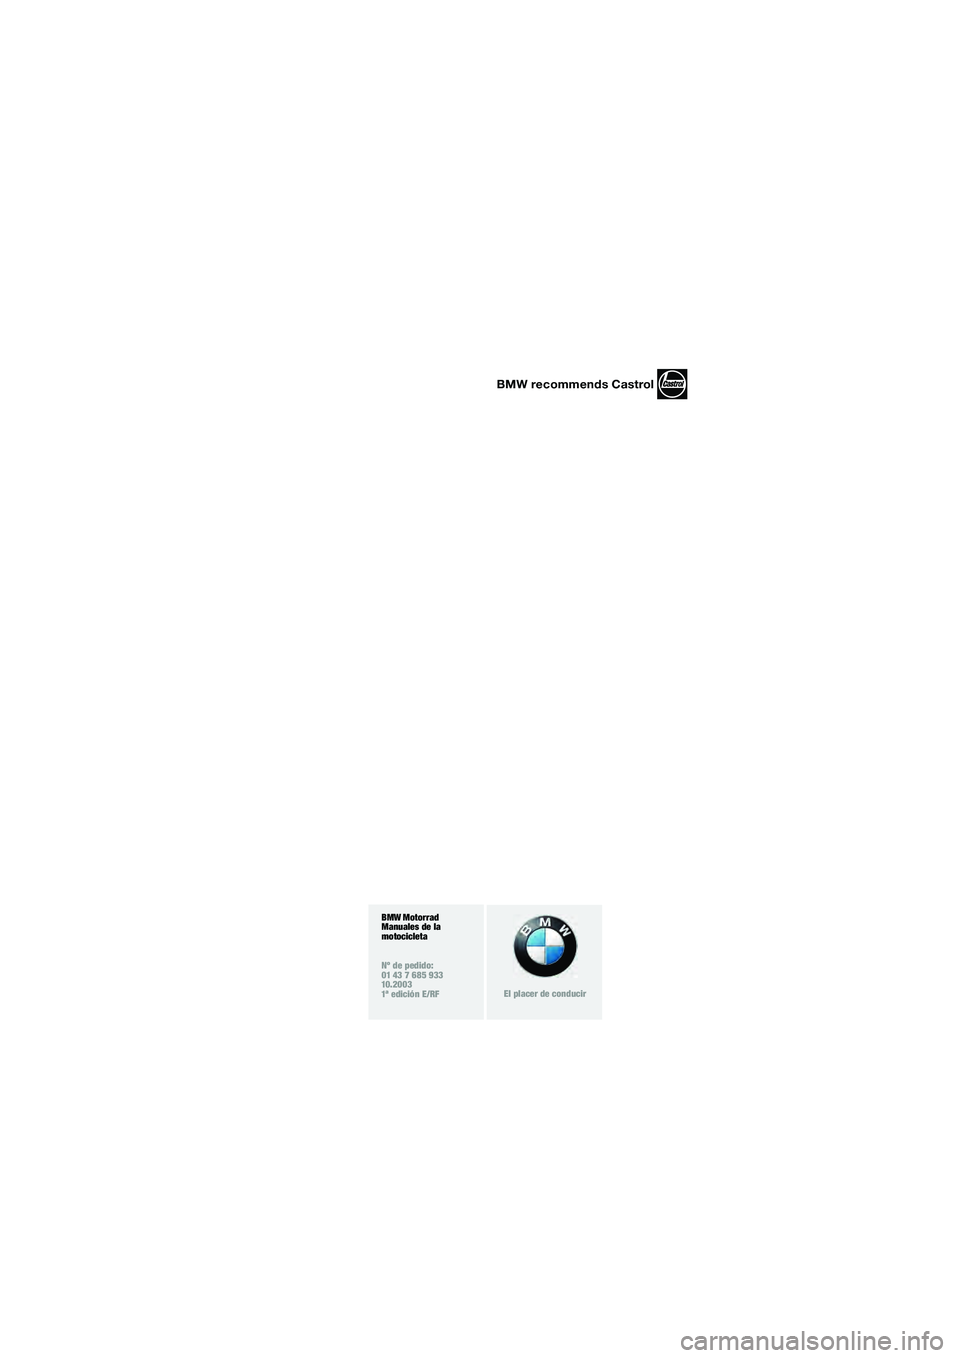 BMW MOTORRAD F 650 GS DAKAR 2003  Manual de instrucciones (in Spanish) 1
BMW recommends Castrol
BMW Motorrad
Manuales de la 
motocicleta
Nº de pedido:
01 43 7 685 933
10.2003
1ª edición E/RF
El placer de conducir
10R13bke4.book  Seite 3  Mittwoch, 1. Oktober 2003  9:4